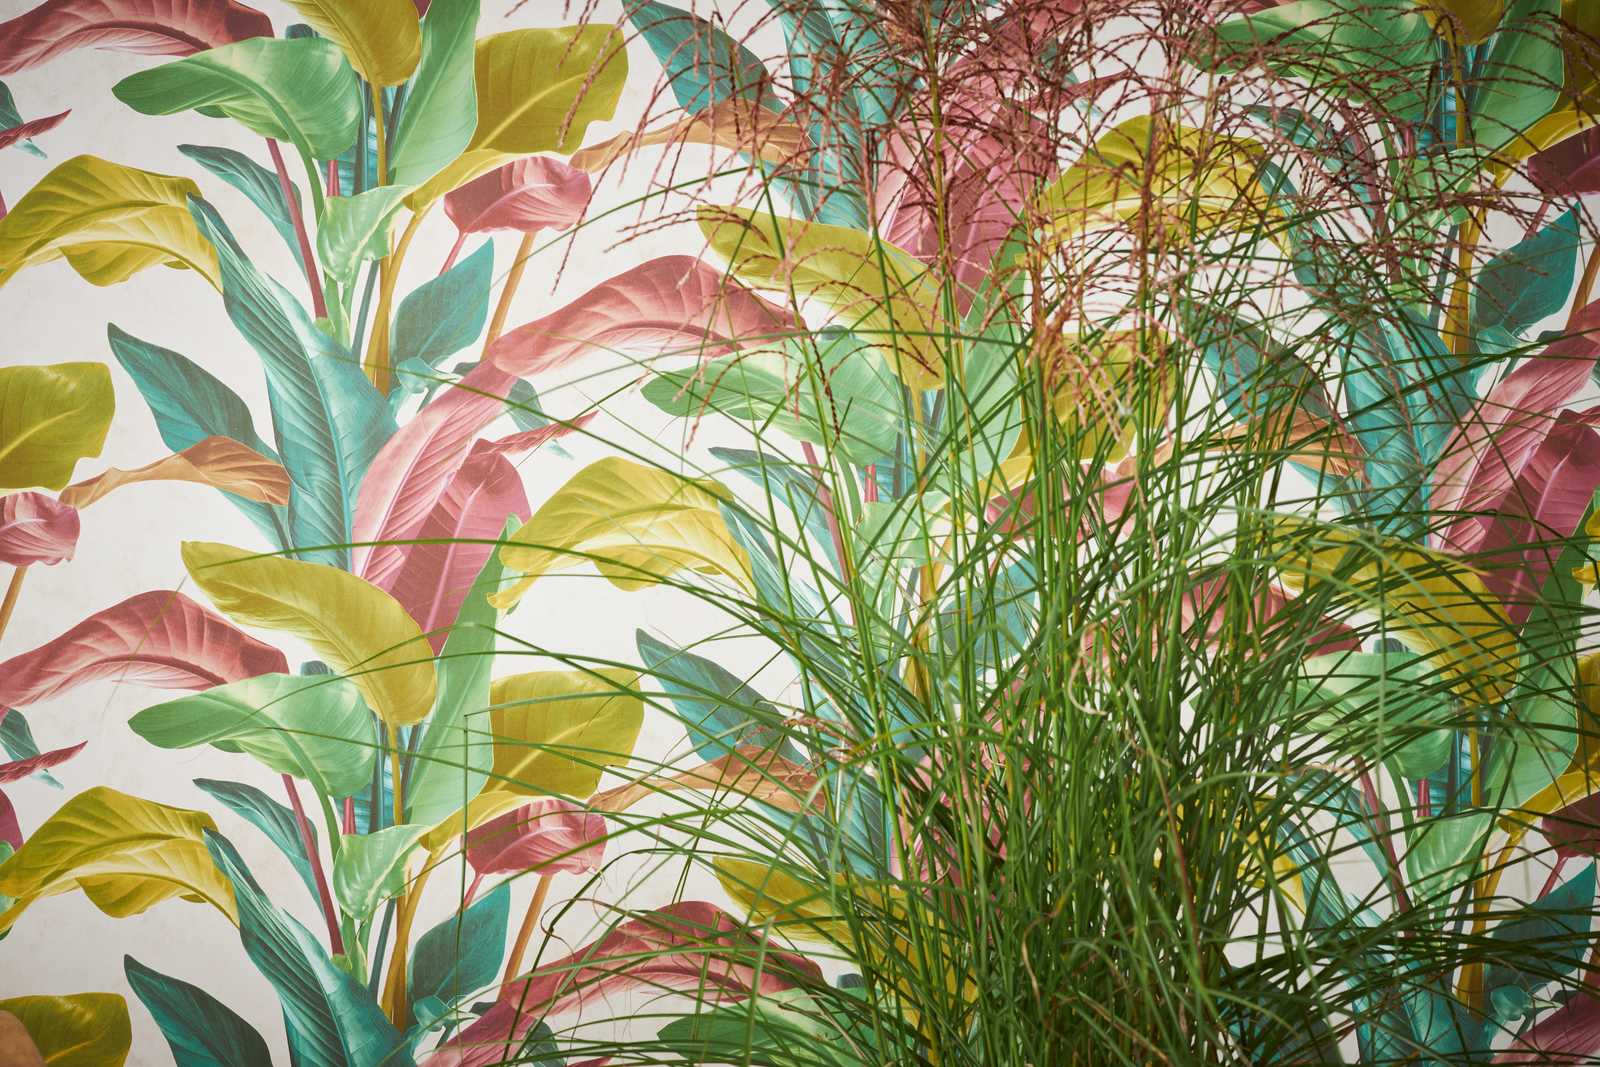             Papel pintado con diseño de hojas en colores vivos - colorido, crema, verde
        